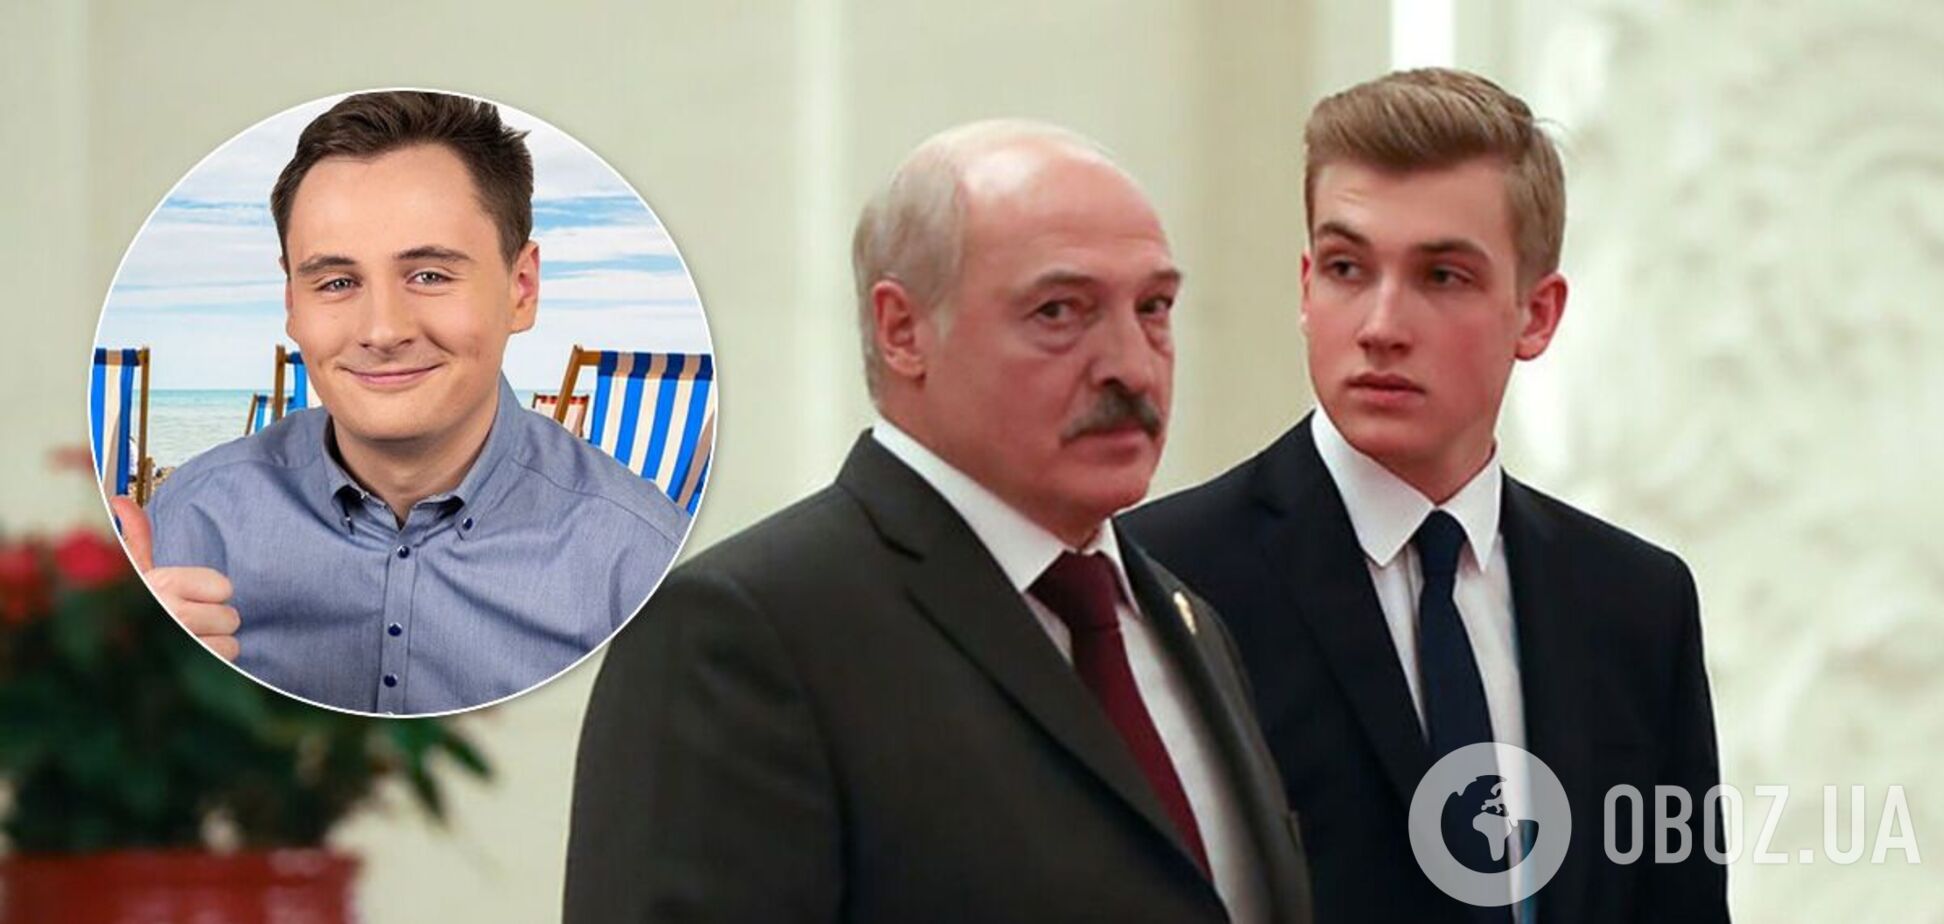 Колю Лукашенко назвали 'соучастником отца'